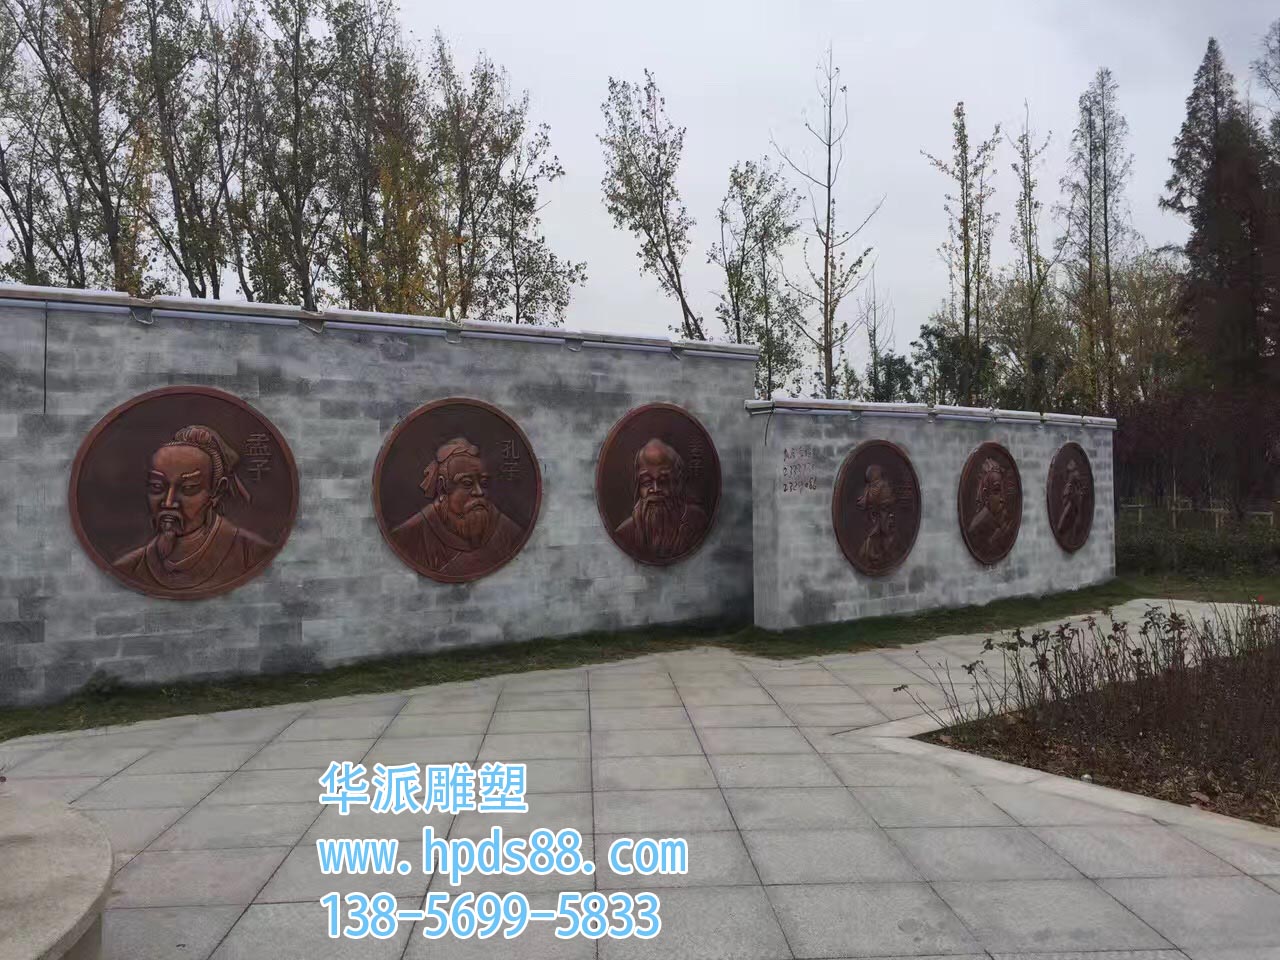 安徽华派雕塑制作名人铜雕